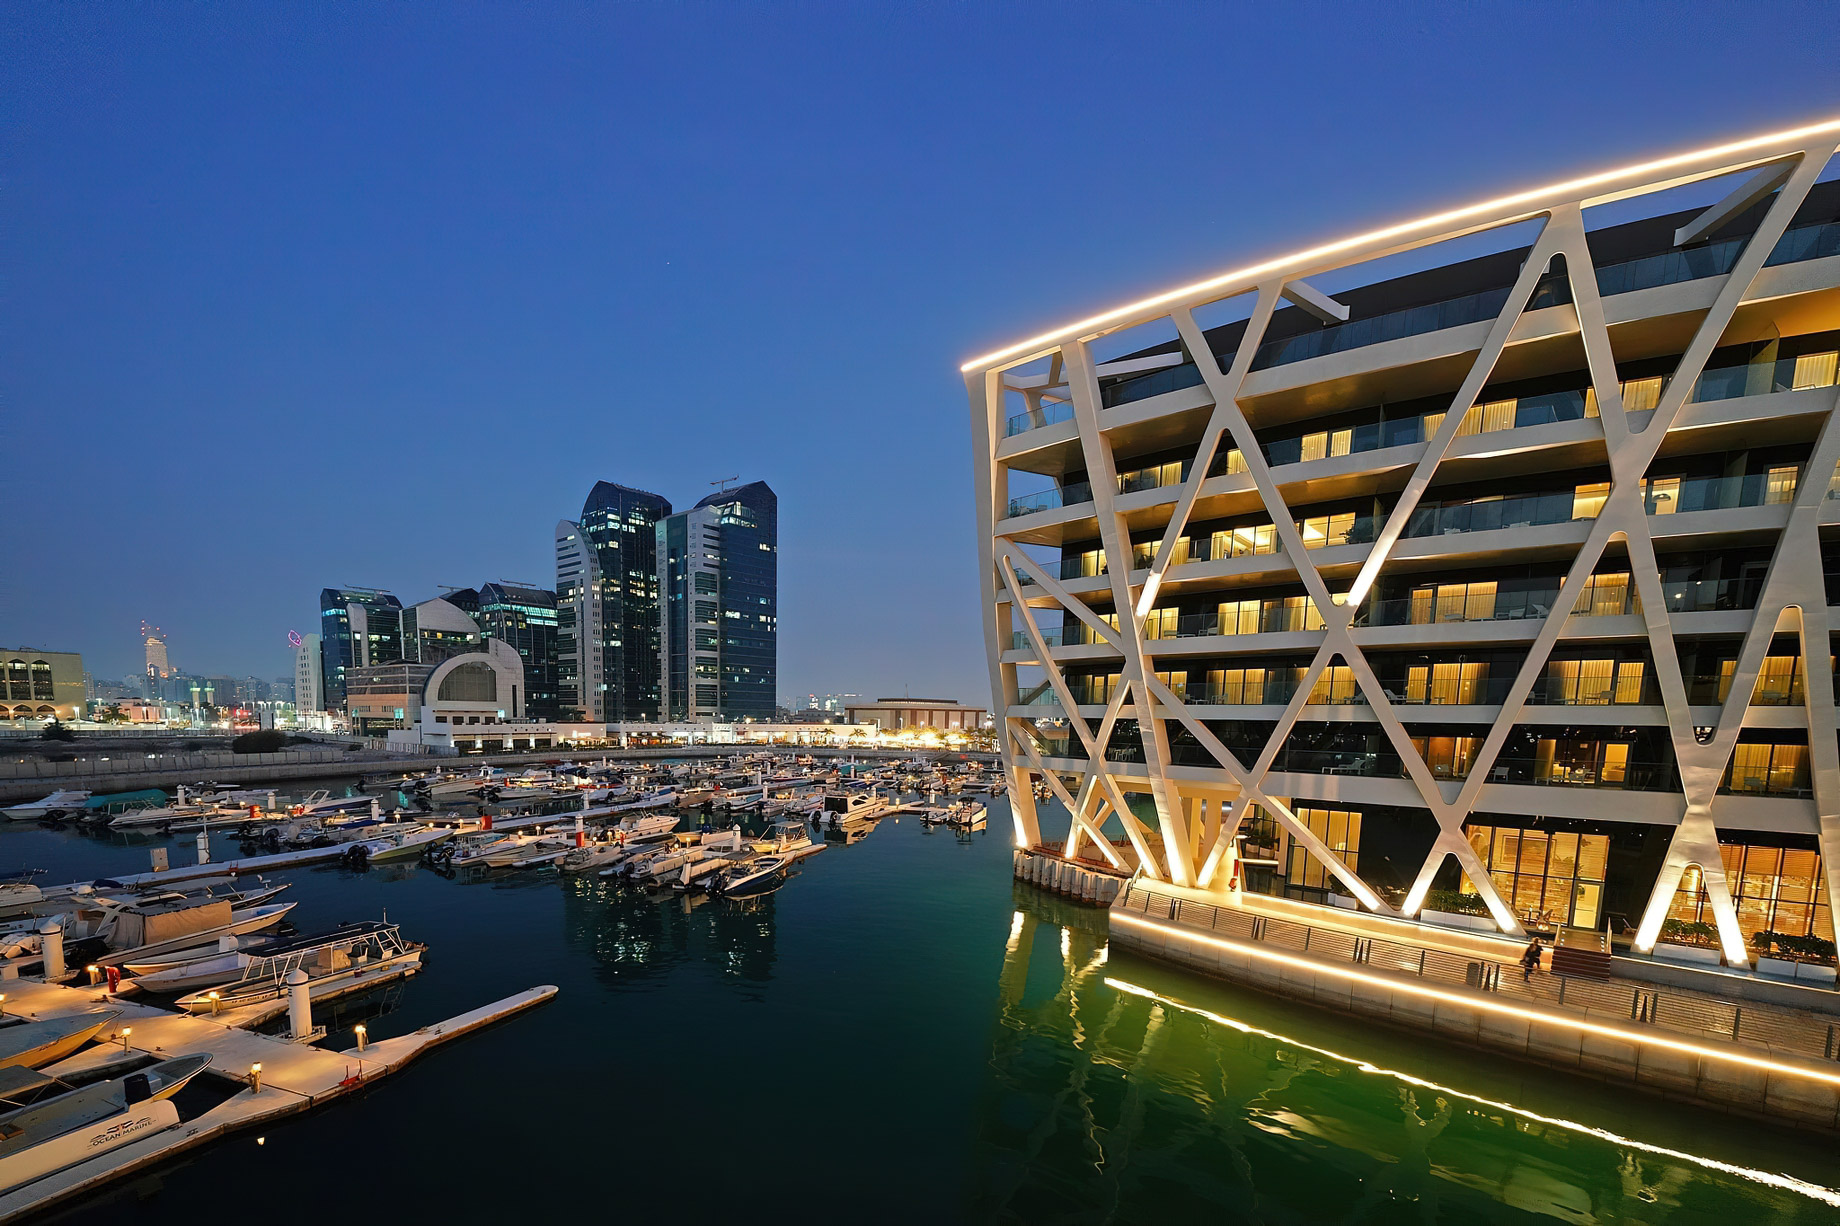 The Abu Dhabi EDITION Hotel – Abu Dhabi, UAE – The Abu Dhabi EDITION Hotel